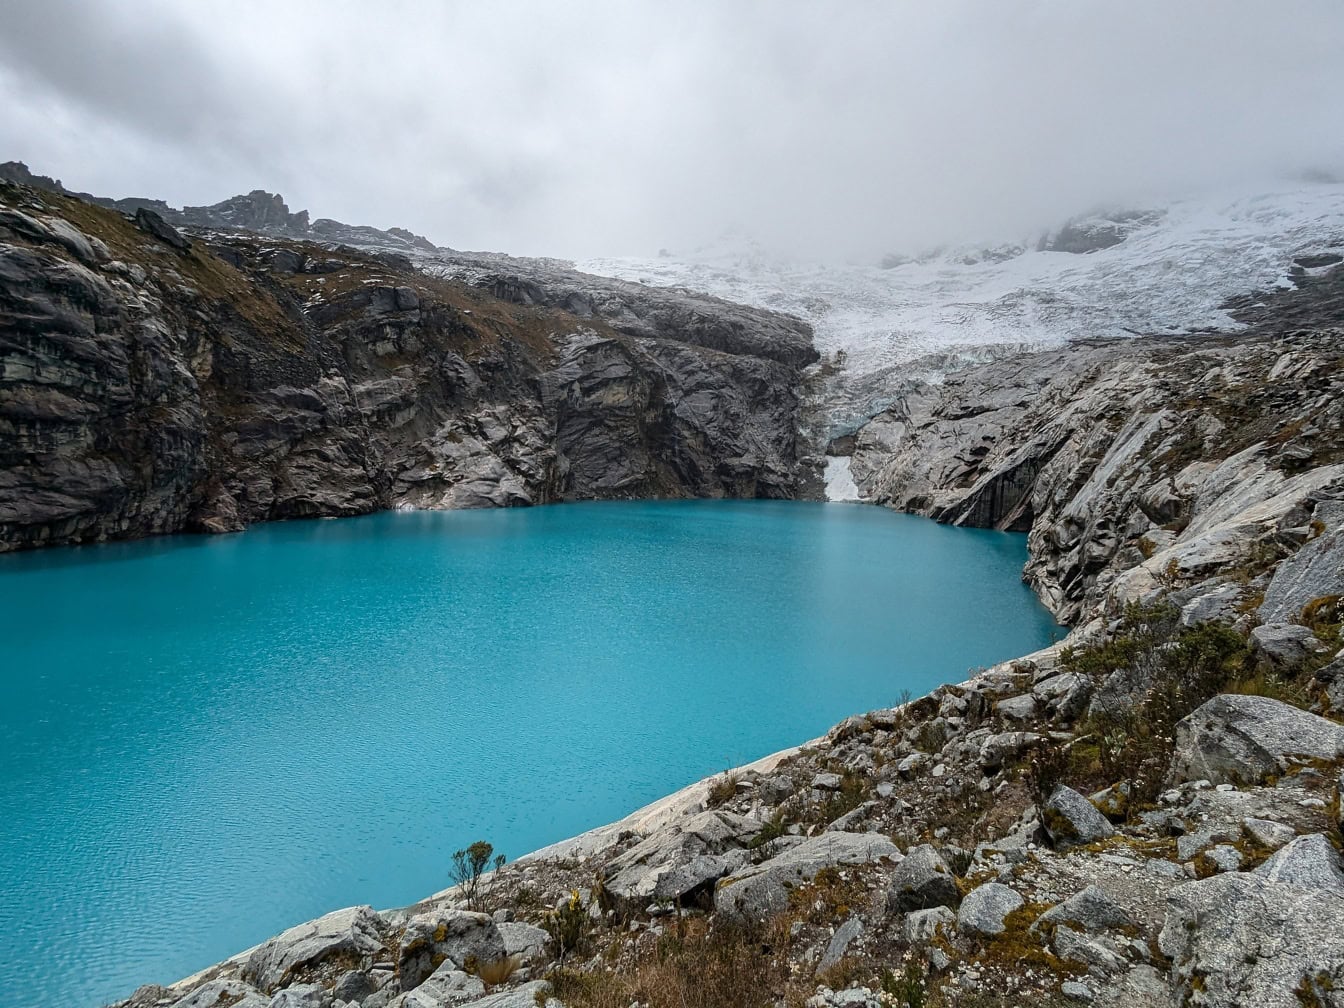 ペルーのワスカラン国立公園にあるネバドワルカン山のふもとにある湖513のターコイズブルー色